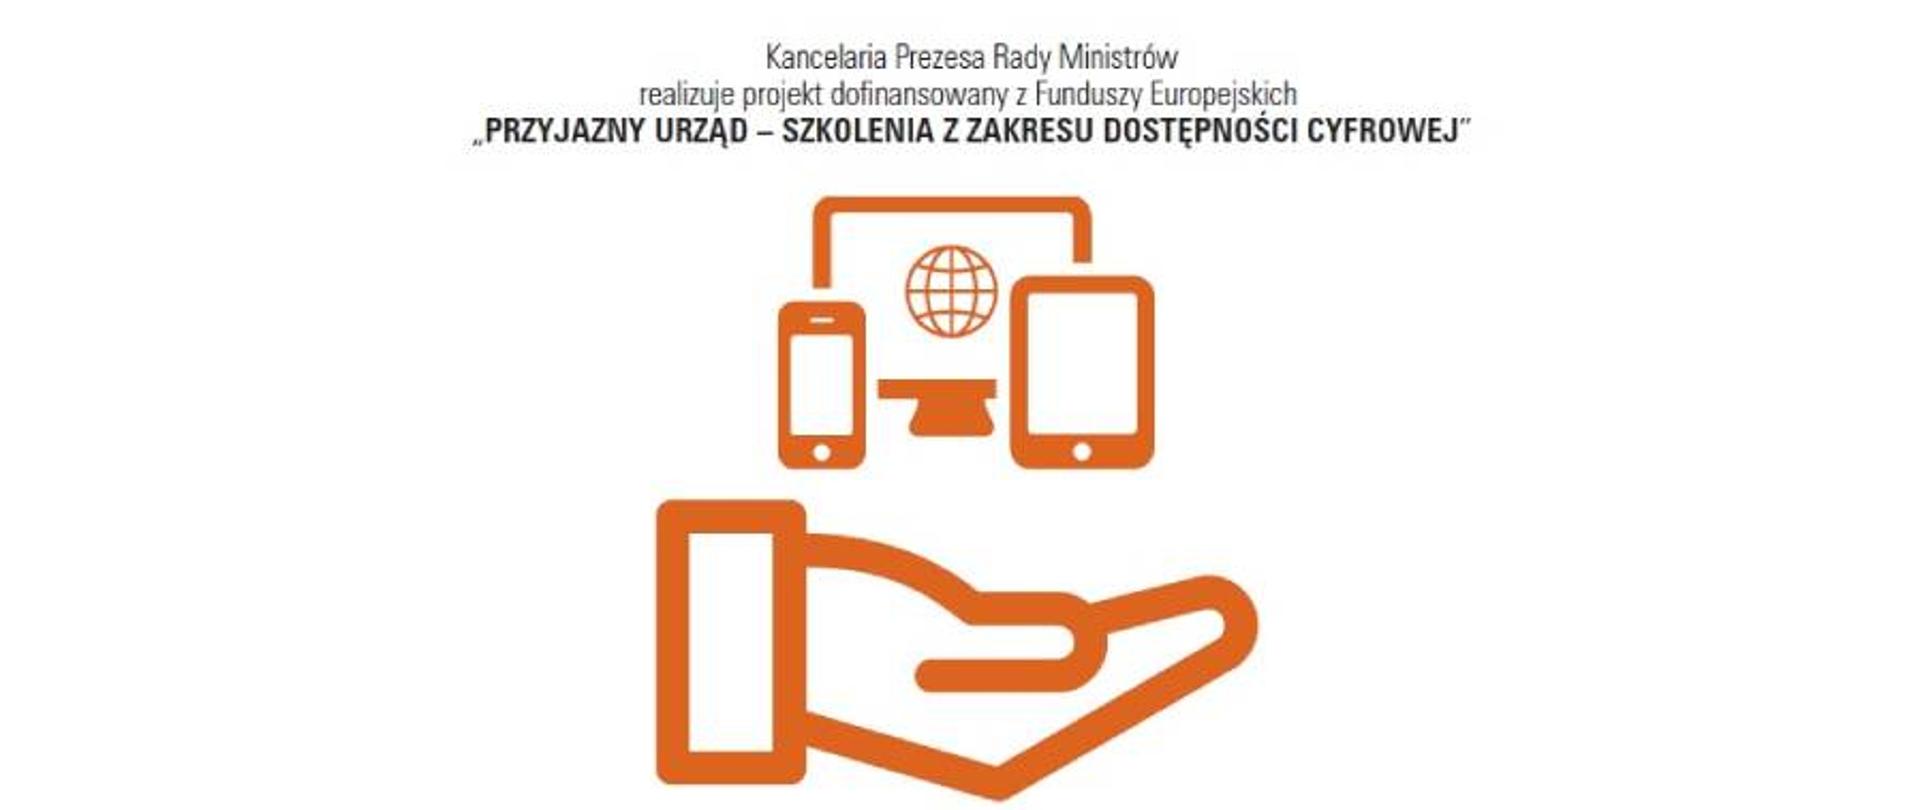 Logo projektu - pomarańczowa grafika wektorowa (dłoń, a nad nią urządzenia mobilne). Nad logiem nazwa projektu "Przyjazny urząd - szkolenia z zakresu dostępności cyfrowej"